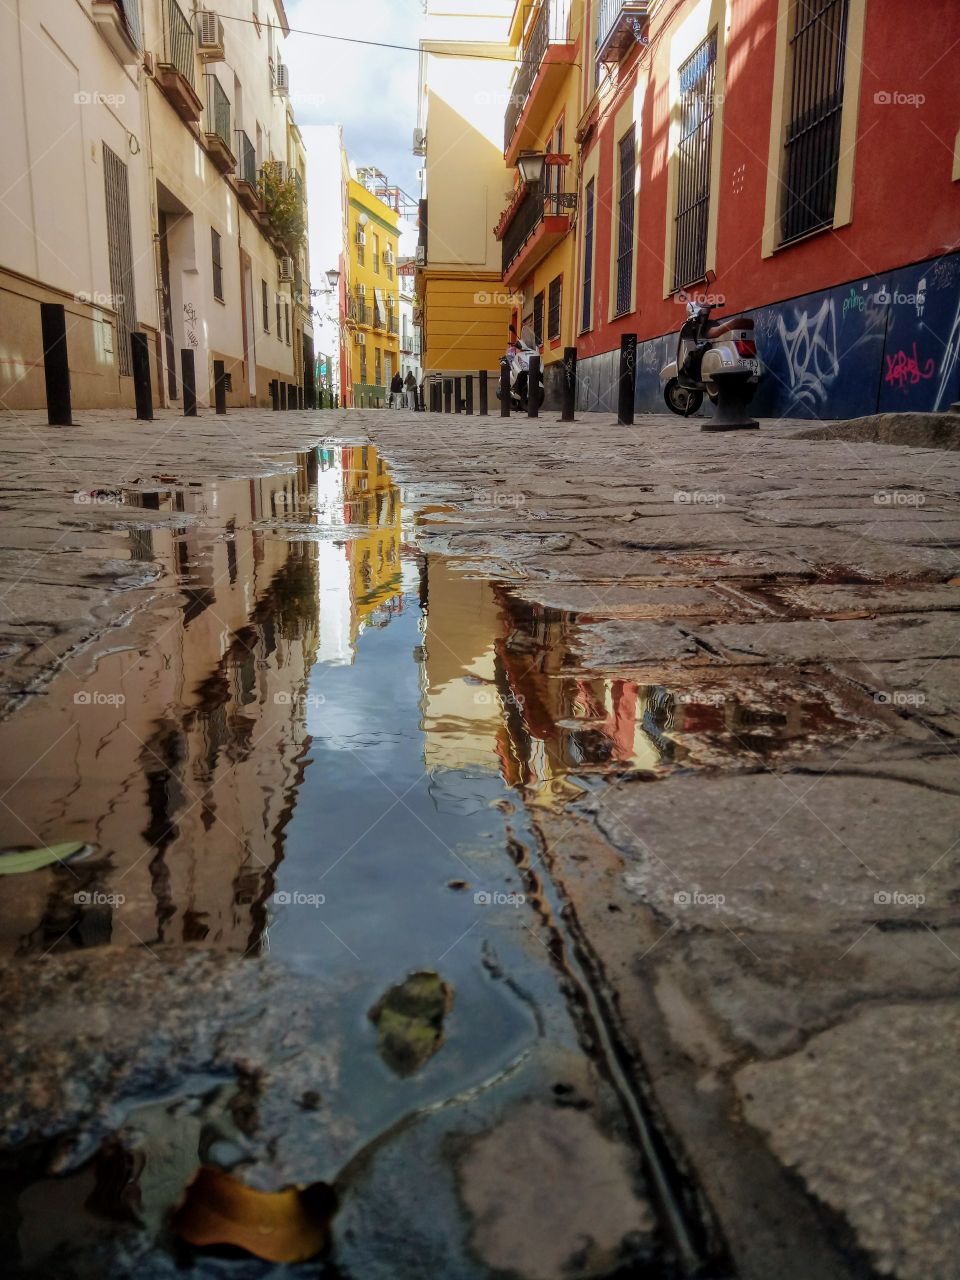 Seville reflection